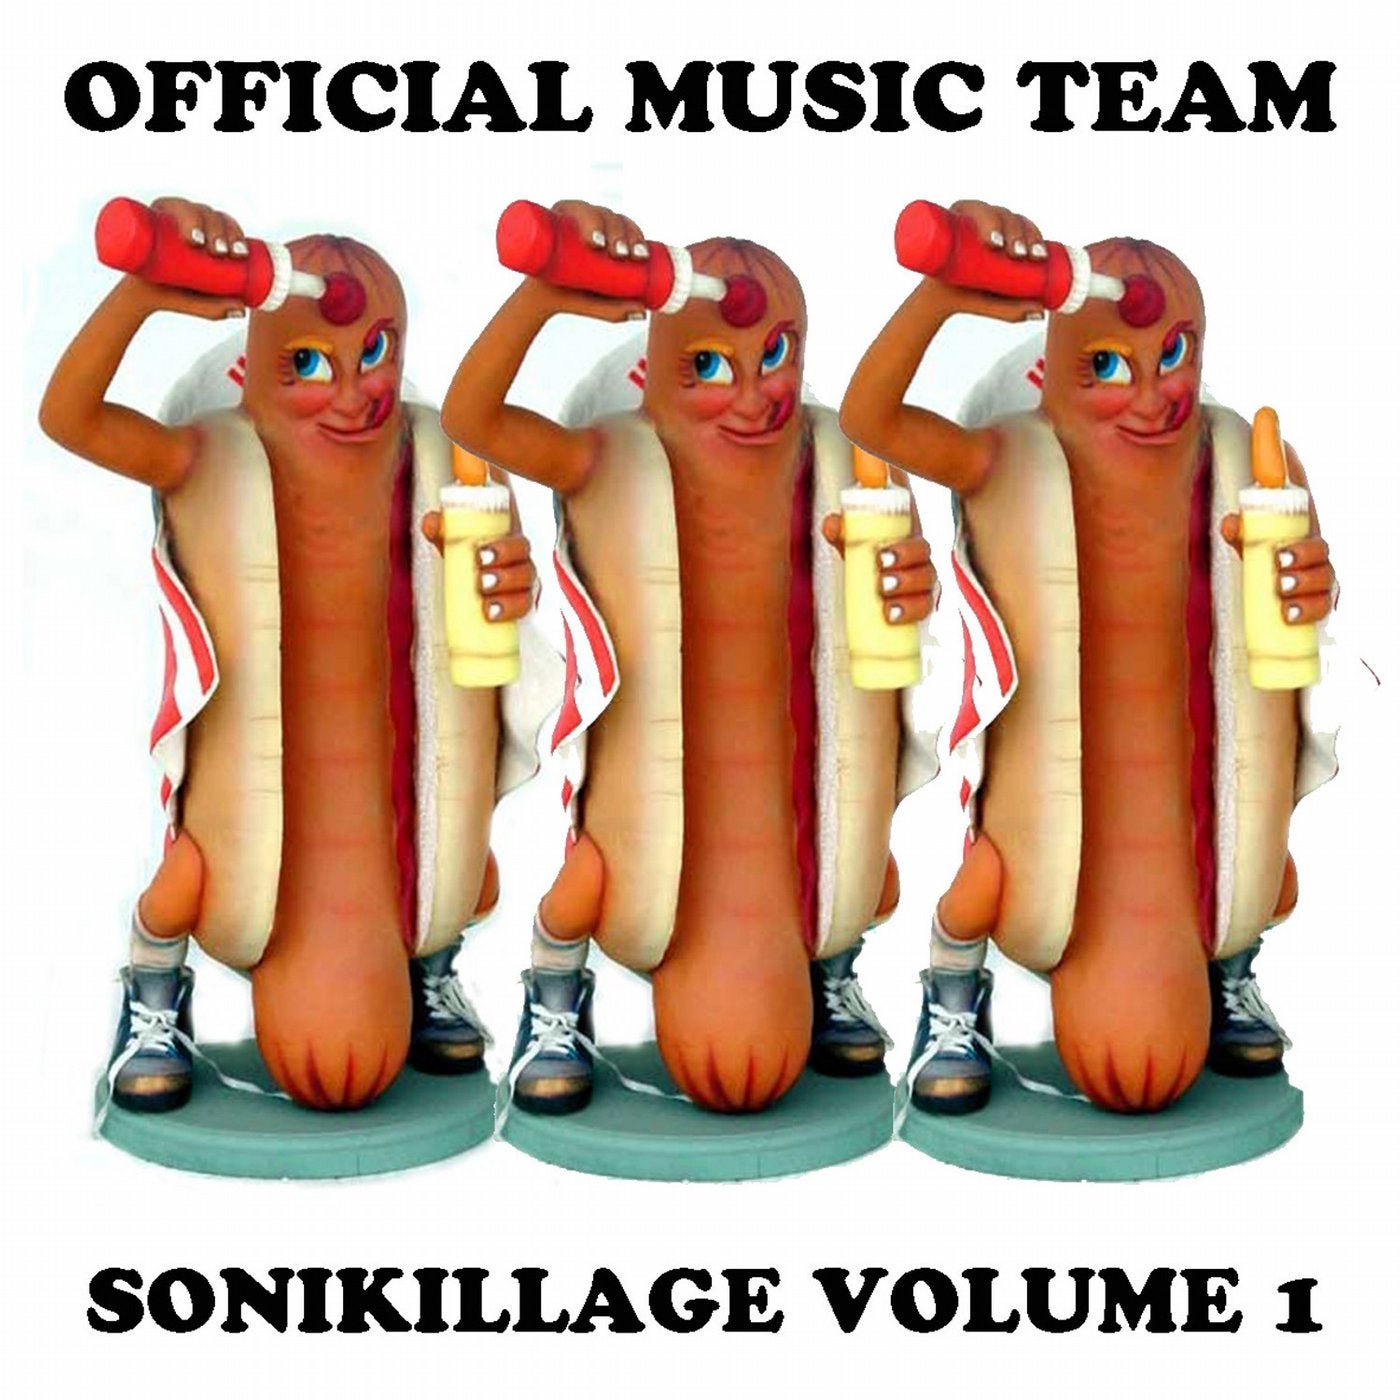 Sonikillage Volume 1